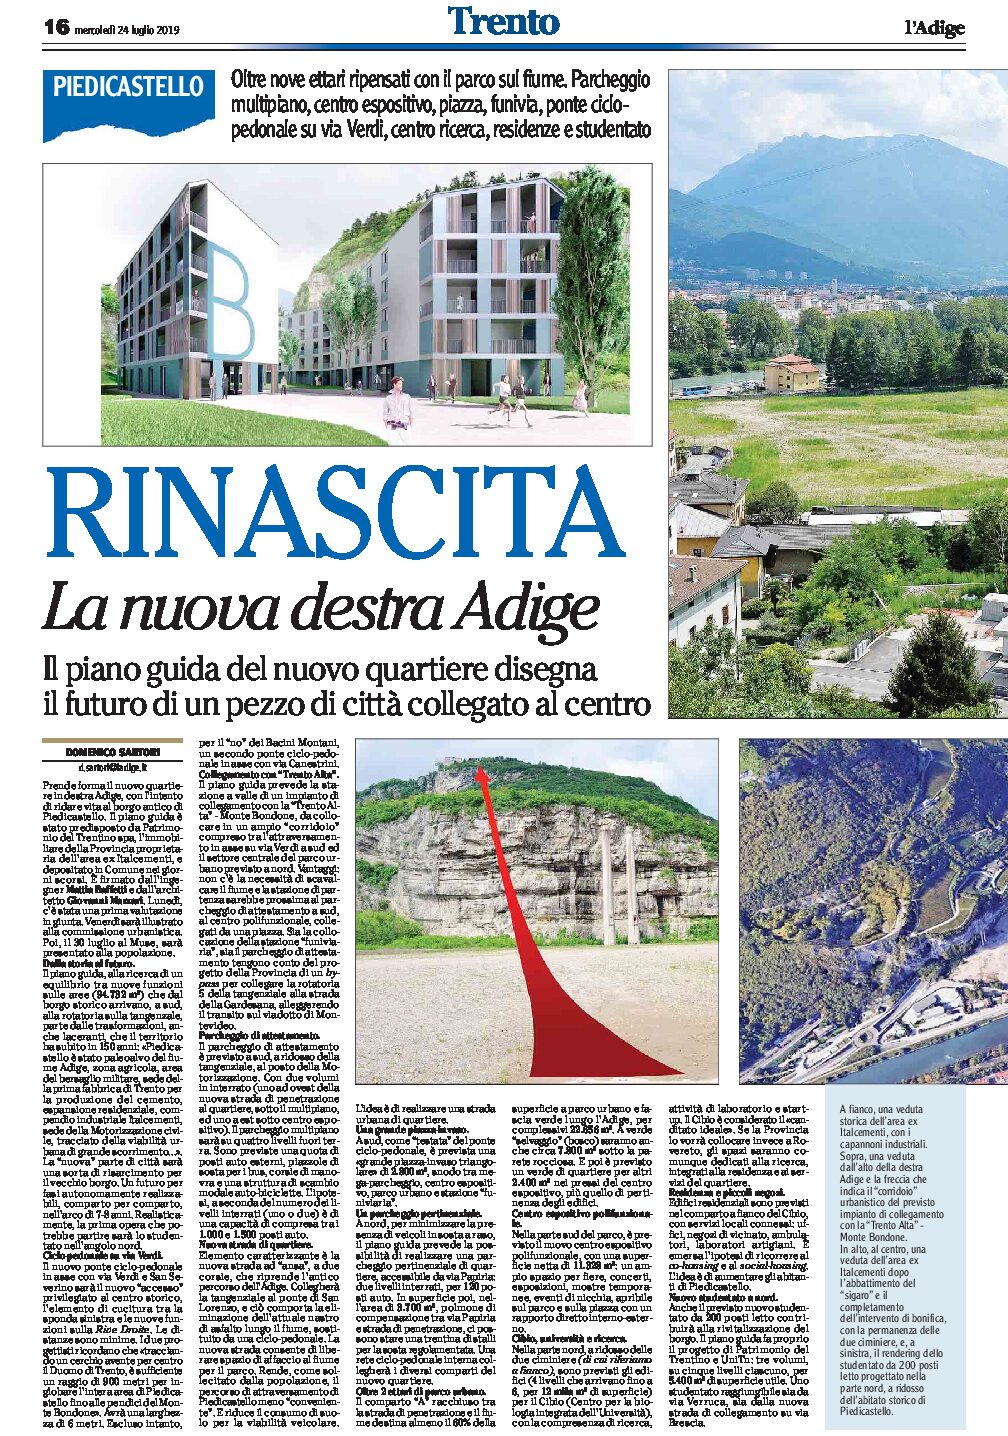 Destra Adige, Piedicastello: consegnato in Comune il piano guida del nuovo quartiere